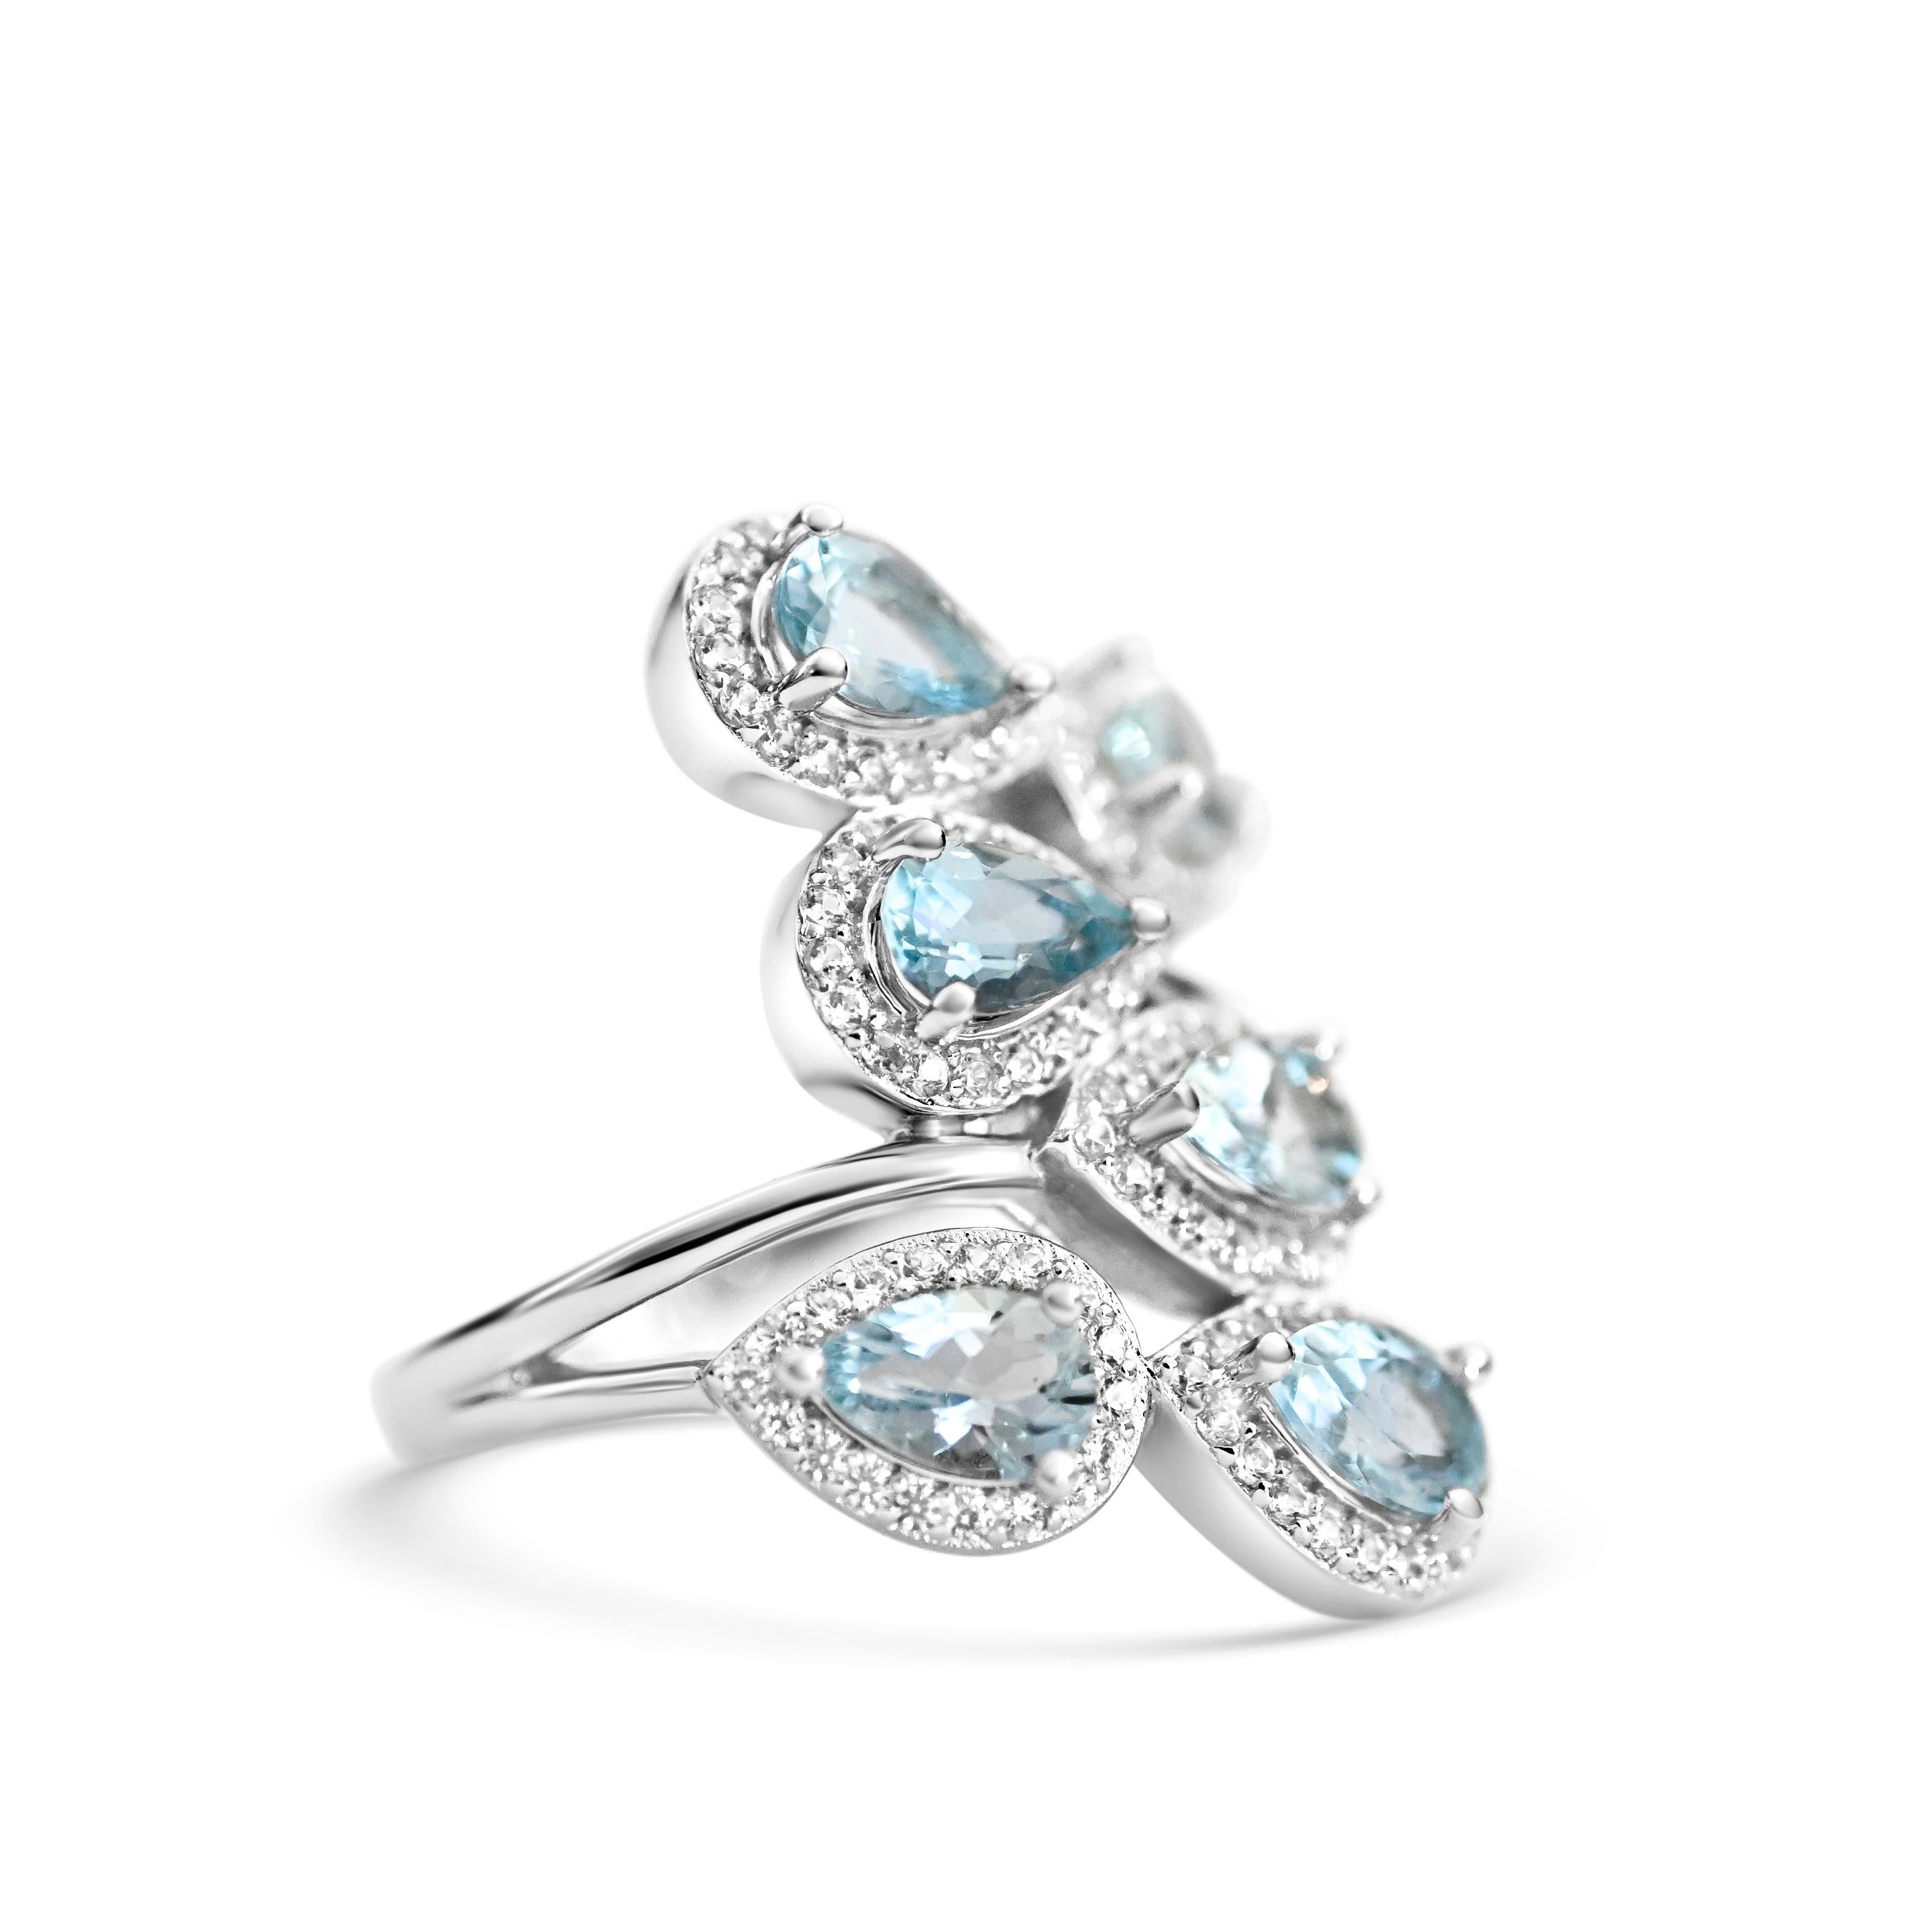 Willkommen bei Blue Star Gems NY LLC! Entdecken Sie beliebte Cluster Ringe Designs von klassisch bis vintage inspiriert. Wir bieten Joyful-Schmuck für den Alltag. Nur für Sie. Wir gehen über die aktuellen Industriestandards hinaus und bieten